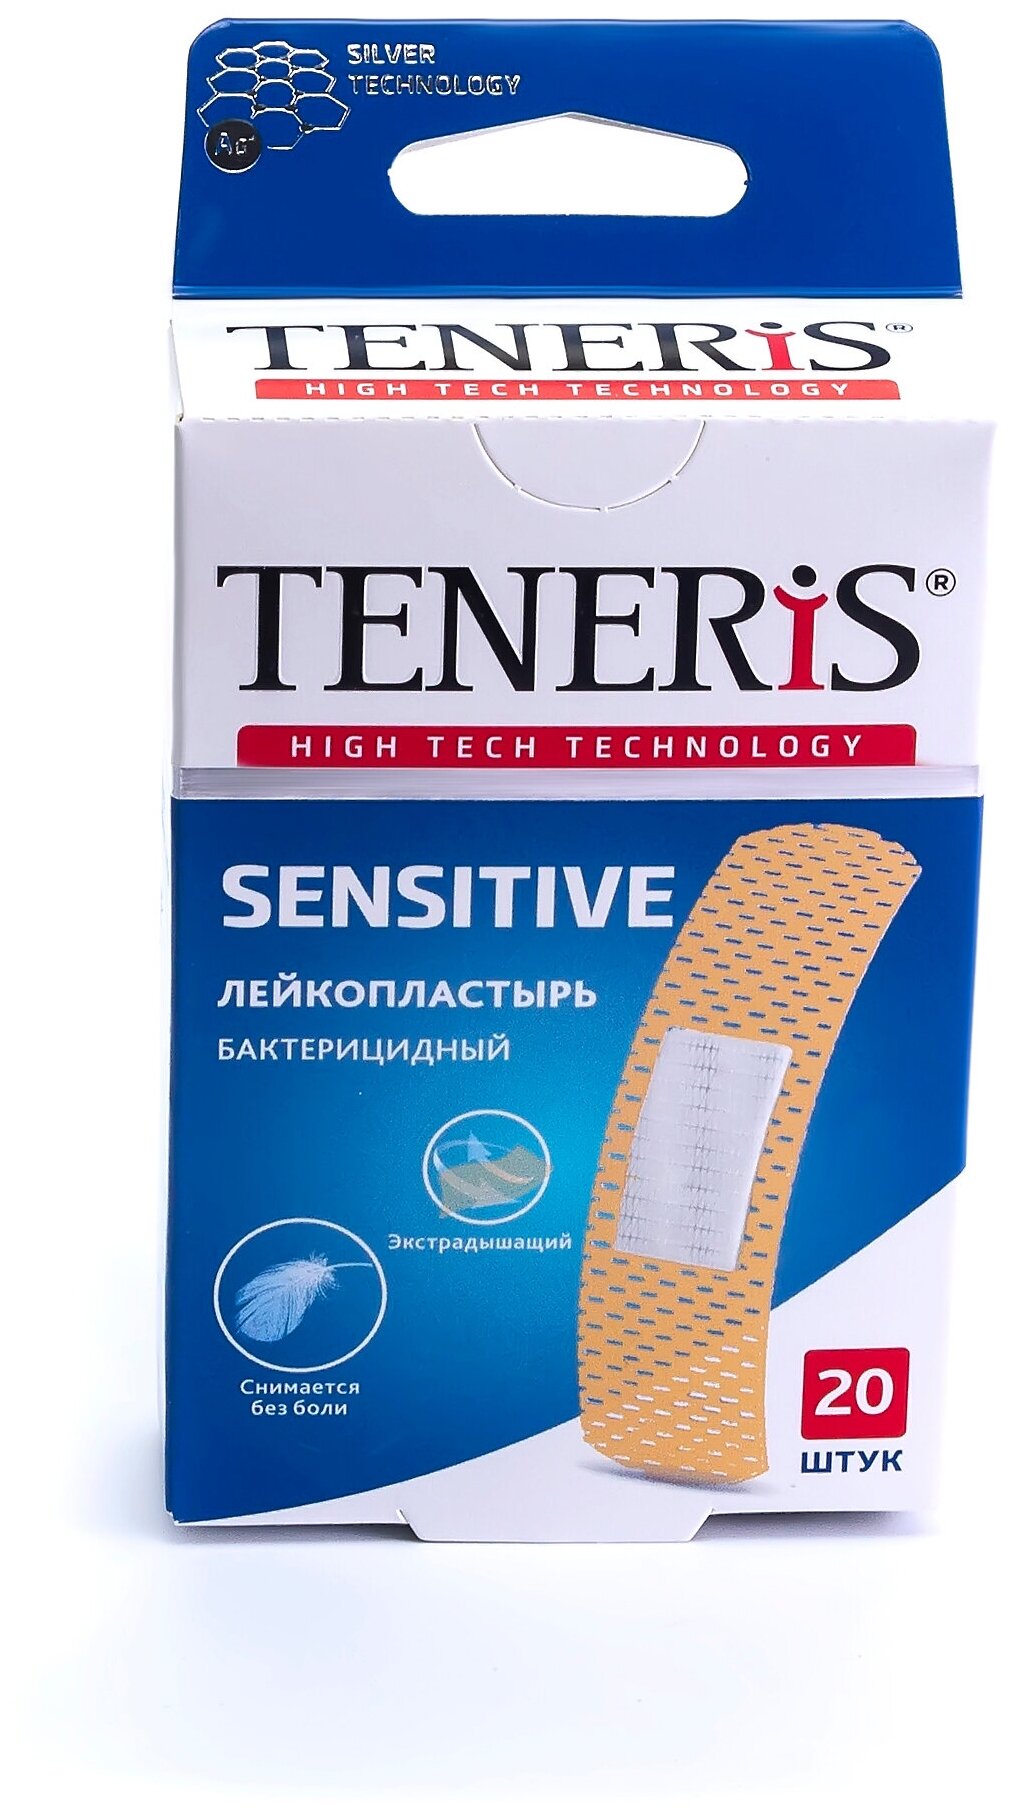 TENERIS Sensitive лейкопластырь бактерицидный с ионами серебра на нетканой основе 20 шт.